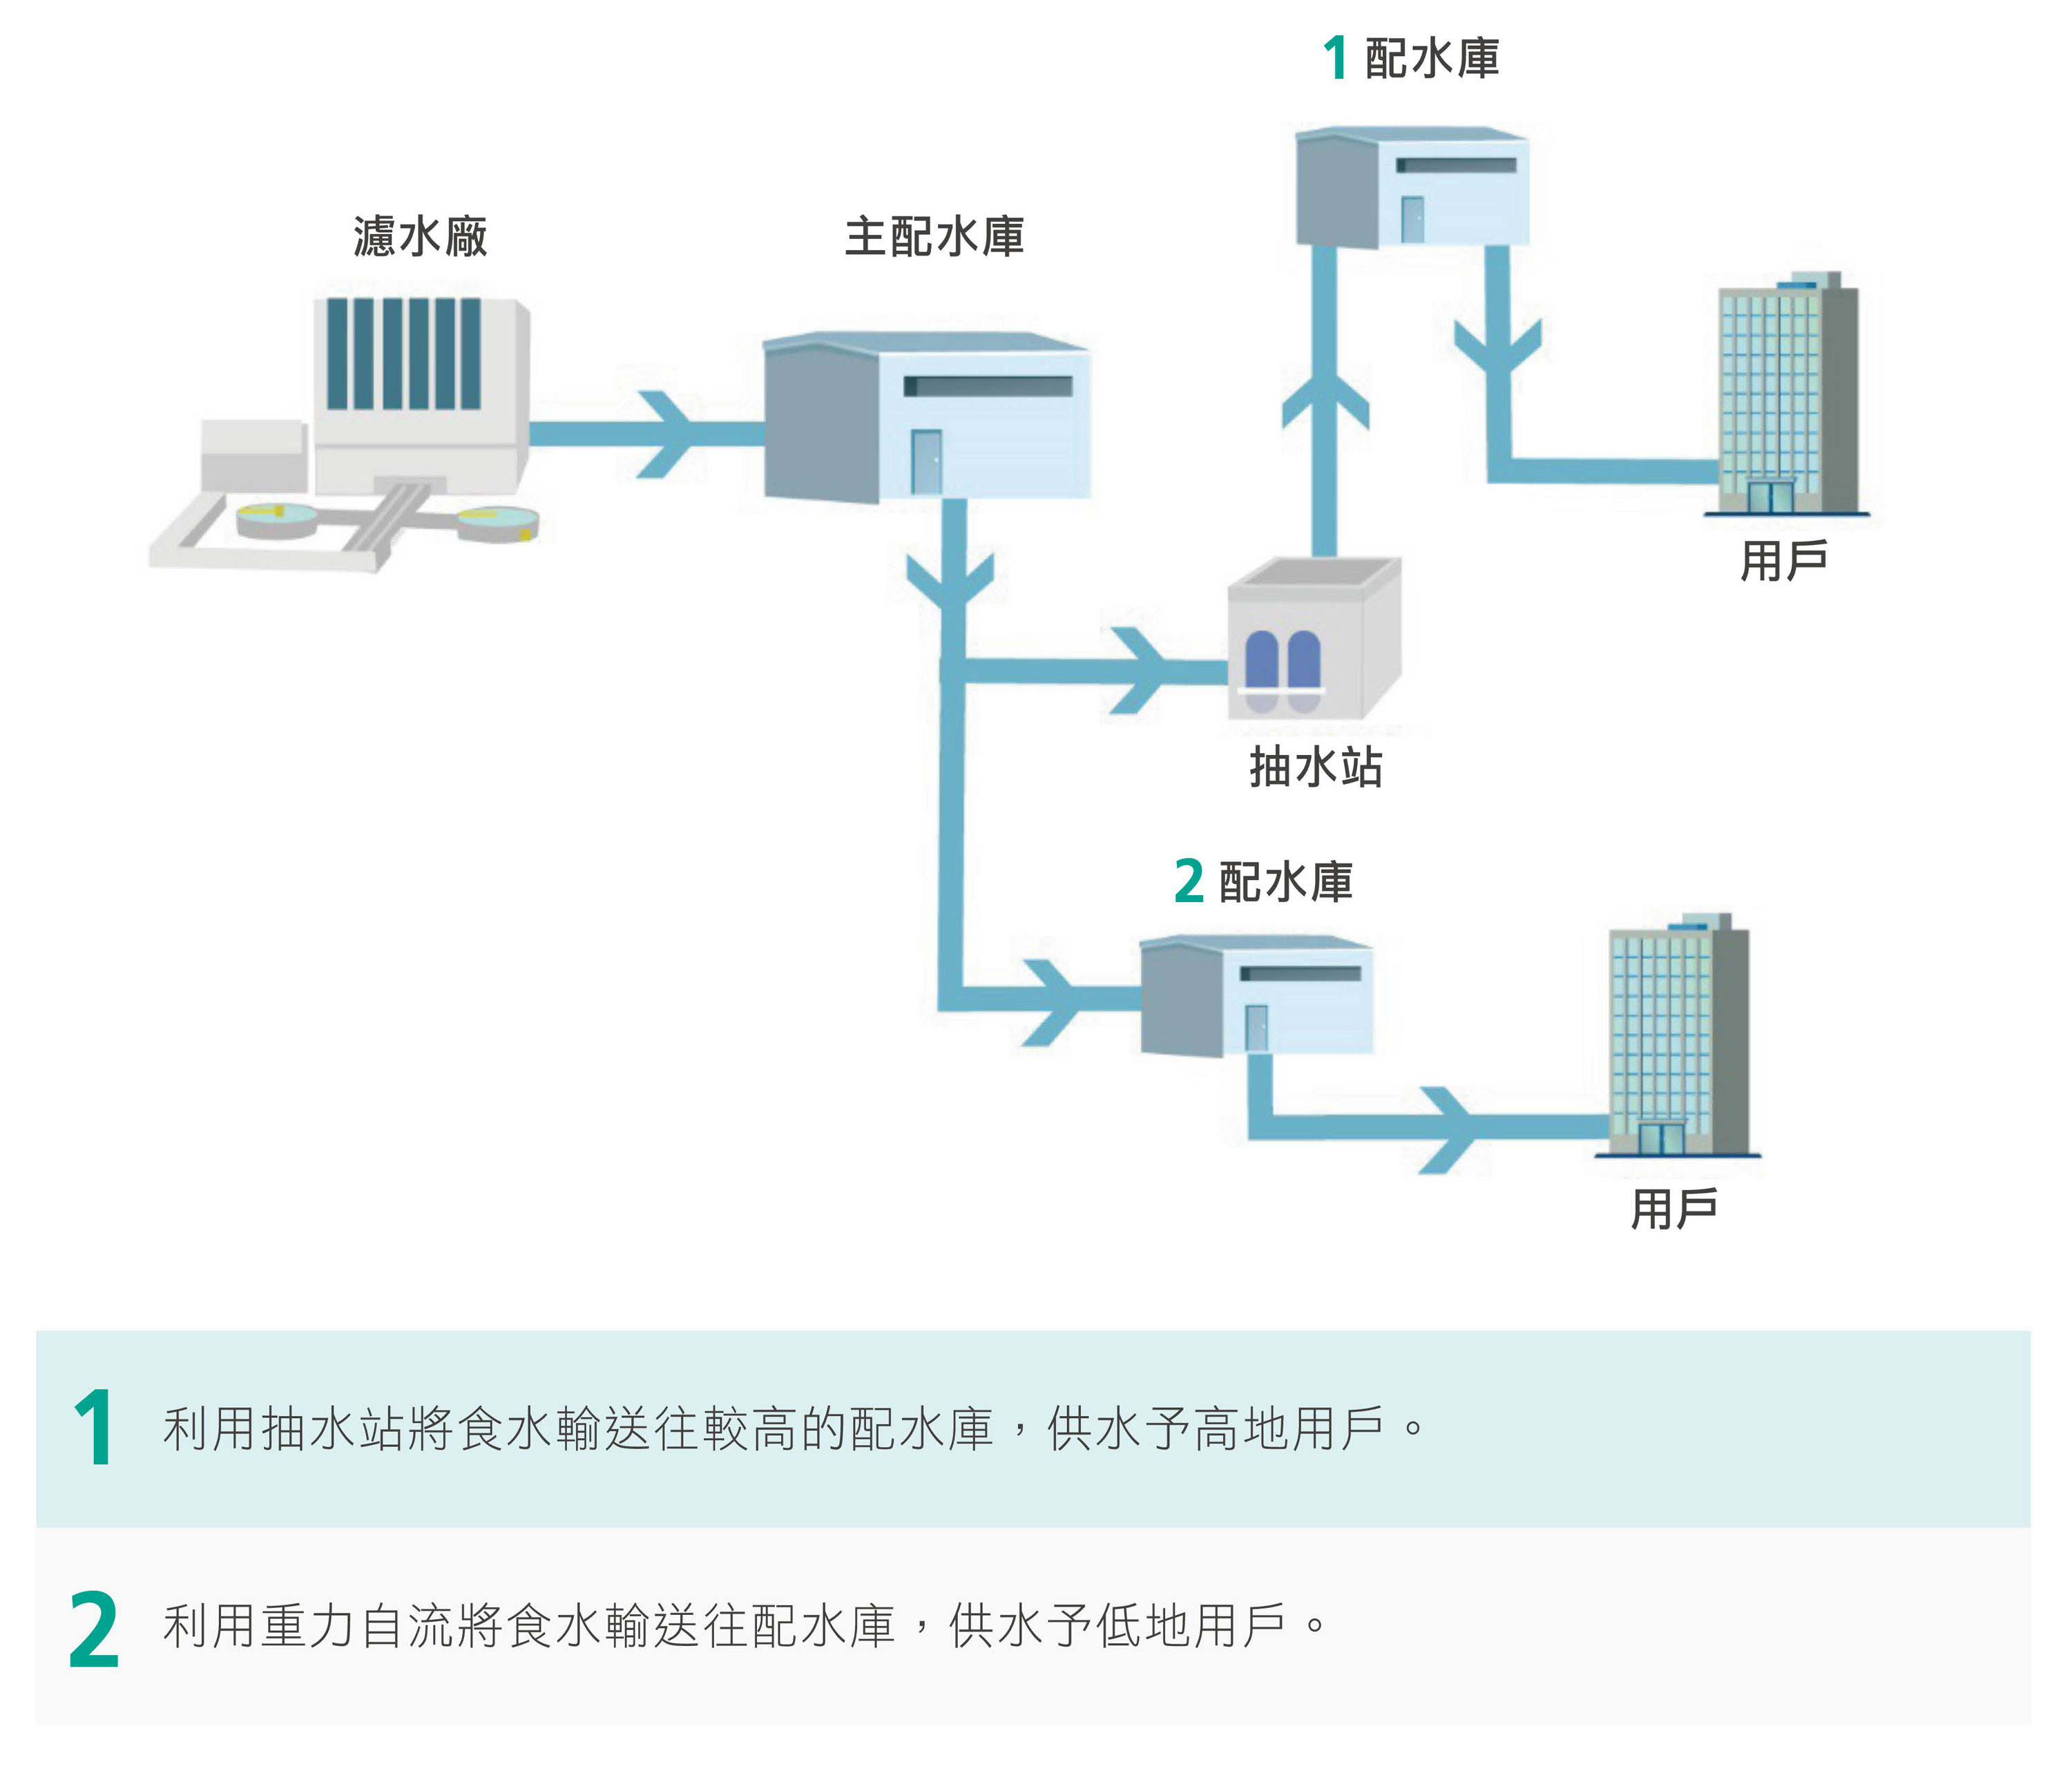 香港食水分配系統示意圖